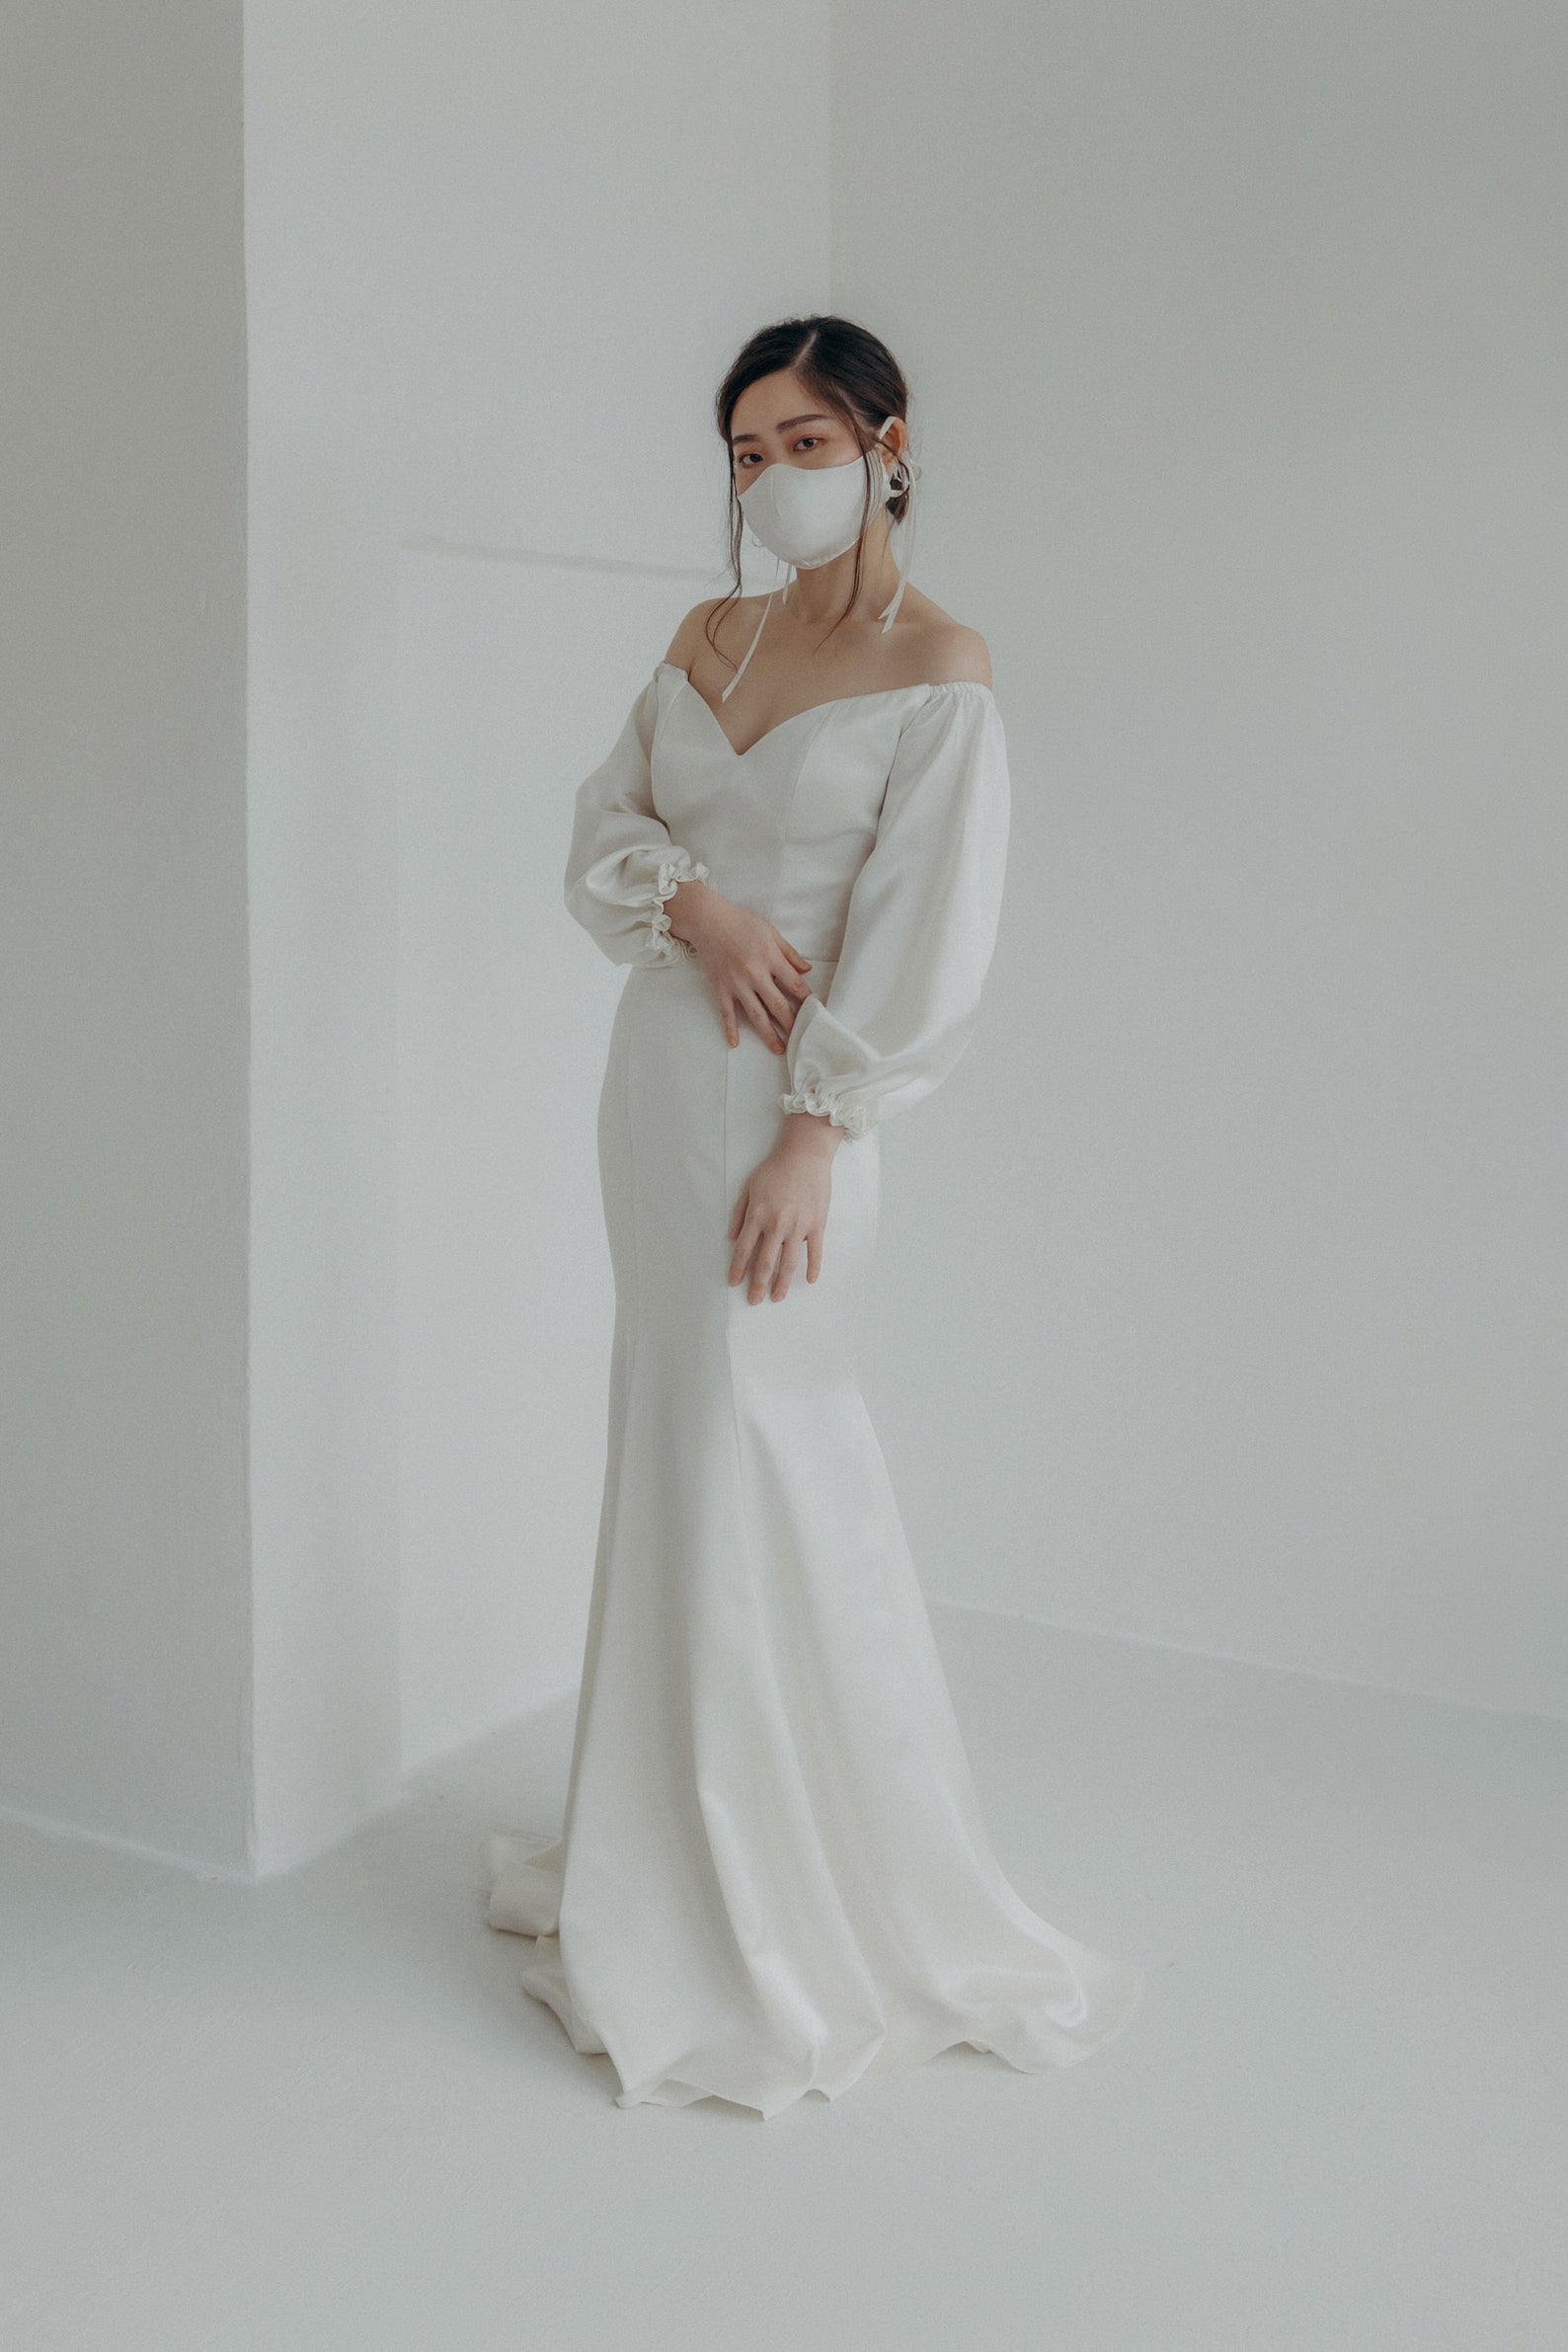 Elyn Tang Bridal Bridal Separates and Two Piece Wedding Dresses Bridal Musings - 35 chiếc váy cưới riêng biệt cho mọi phong cách của cô dâu